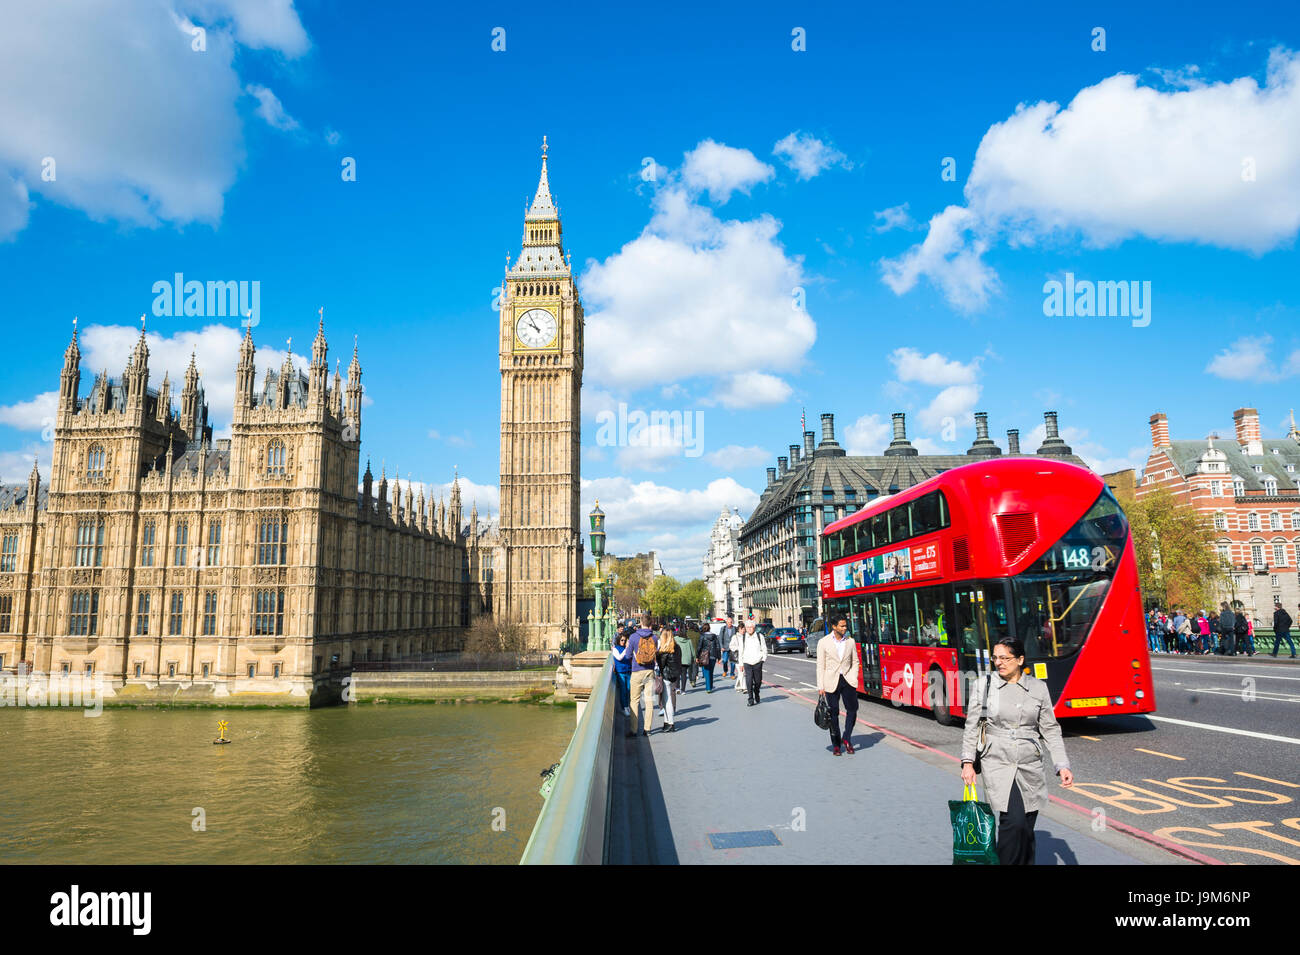 Londra - 27 Aprile 2015: una moderna double-decker bus passa pedoni che attraversano il ponte presso il Palazzo di Westminster in una luminosa mattina di primavera. Foto Stock